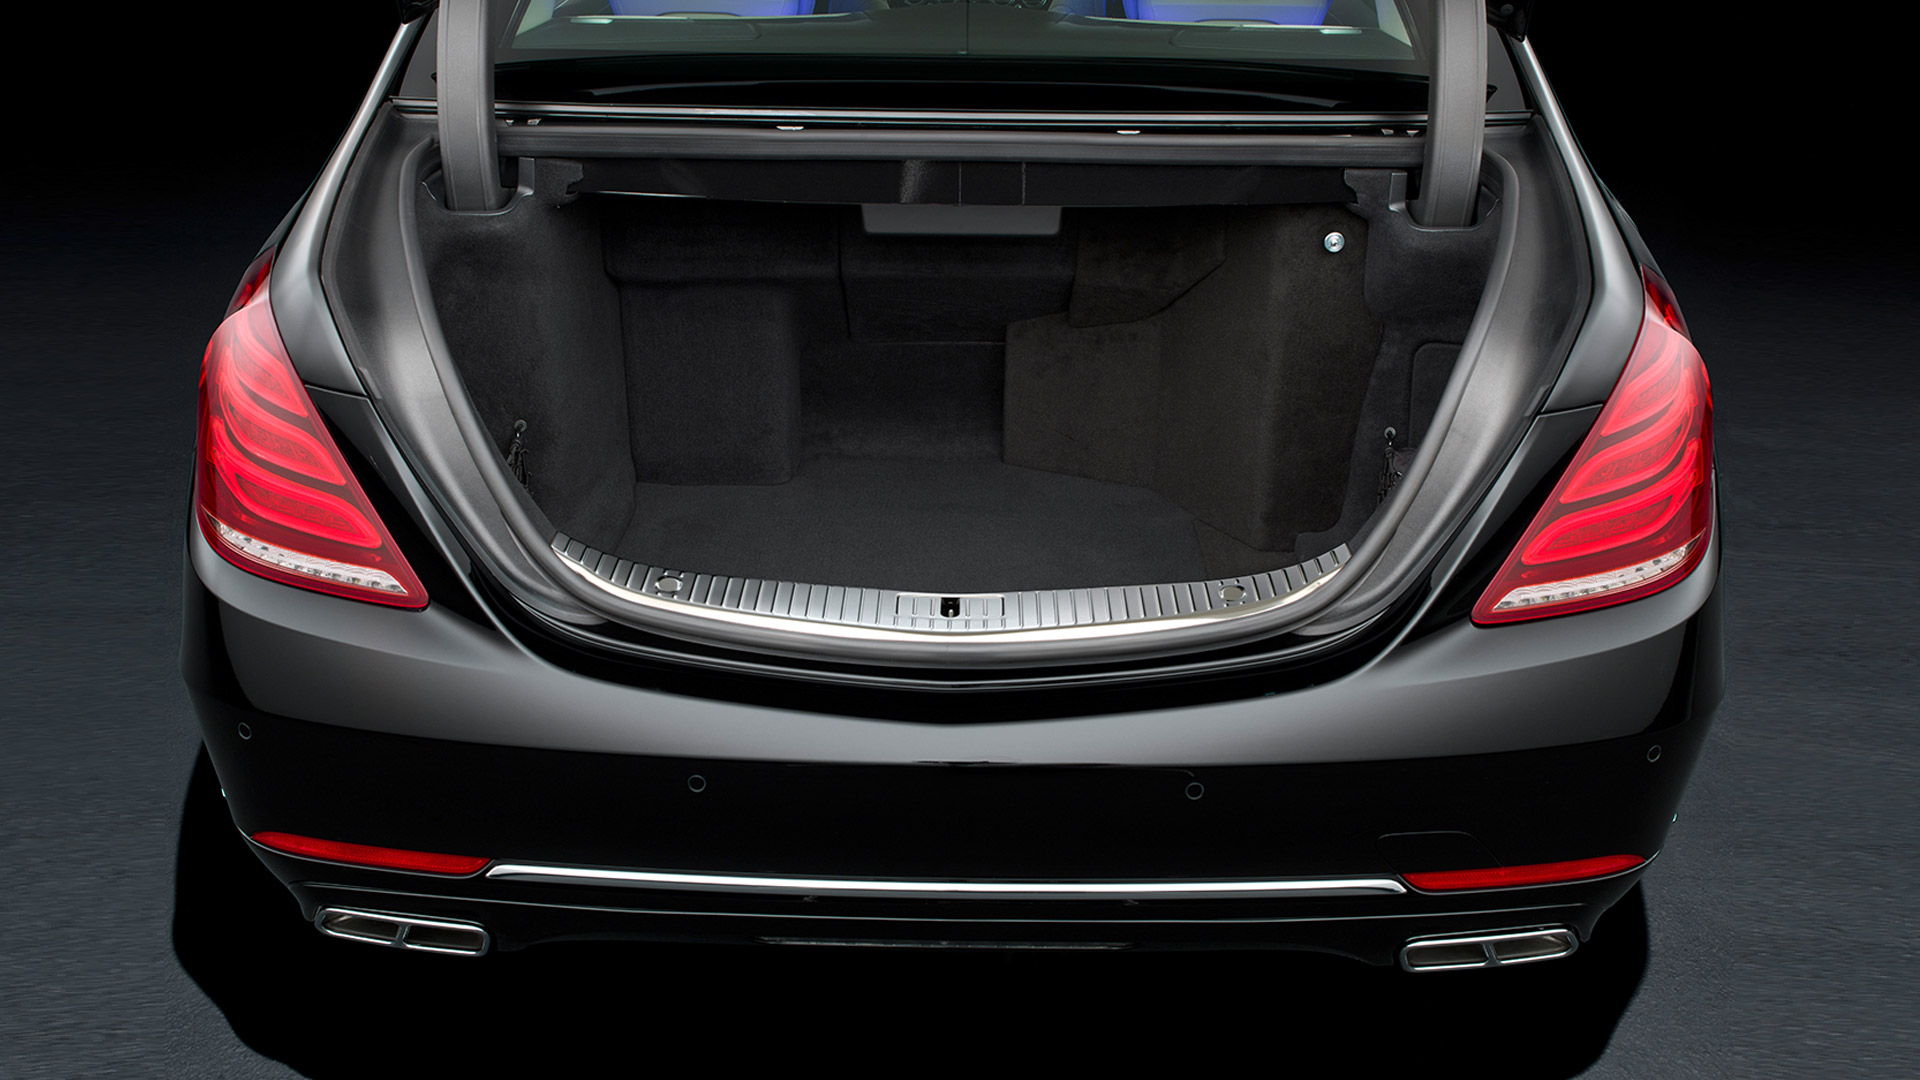 Mercedes Benz S600 guard 2015 STD Interior